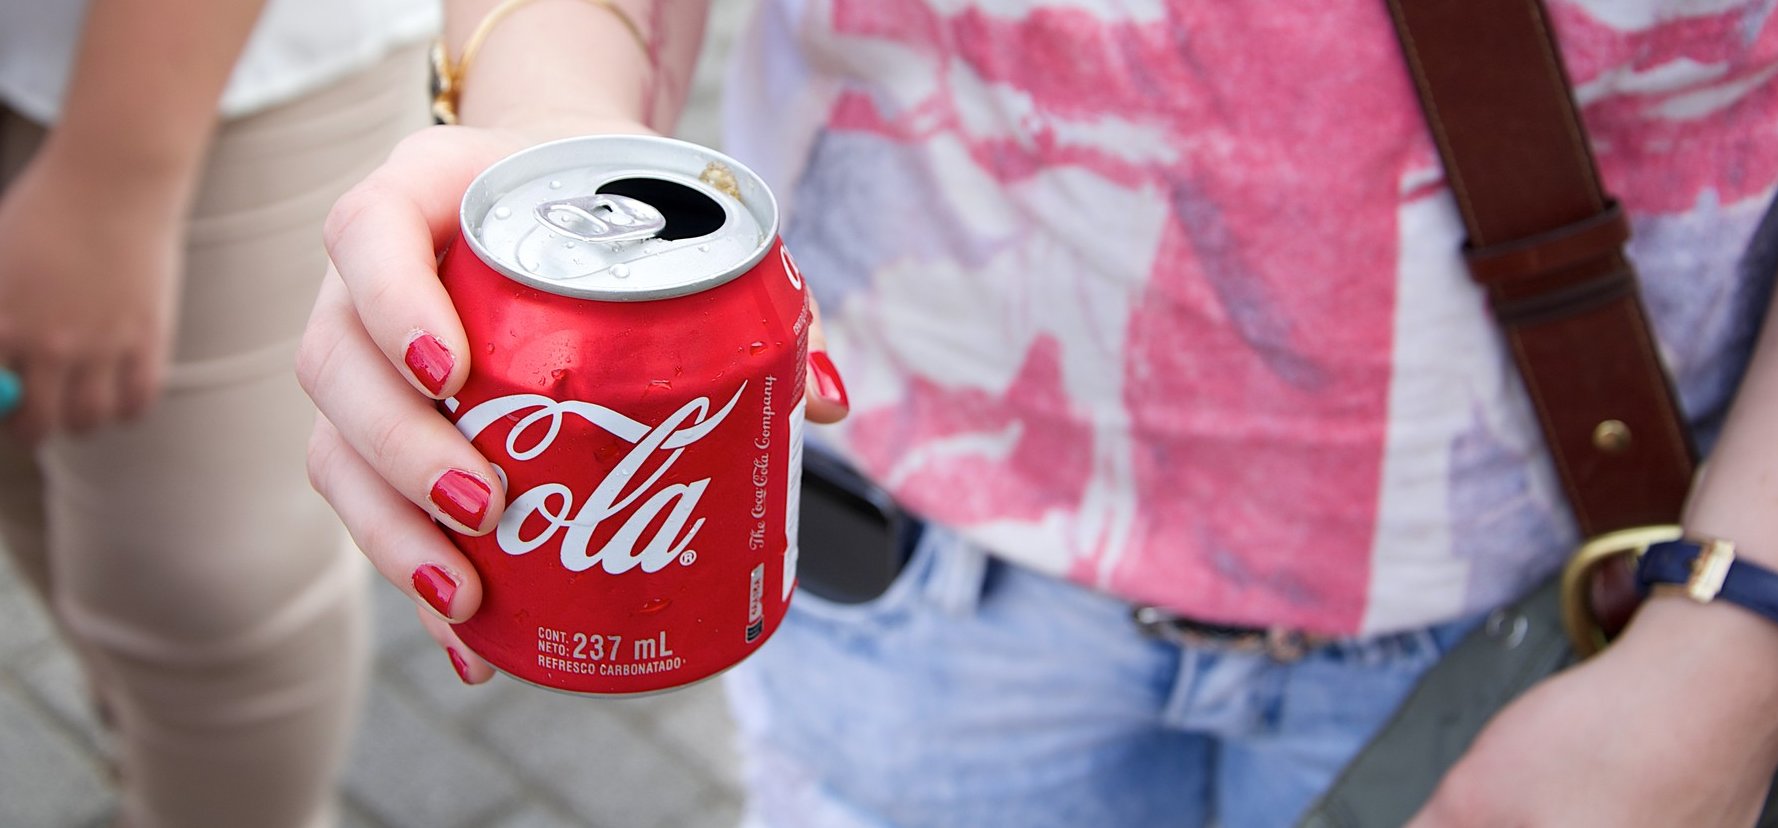 A Coca-Cola megint kitalált egy kutyaütő ízesítést, lassan kiábrándítja a kólából a rajongókat